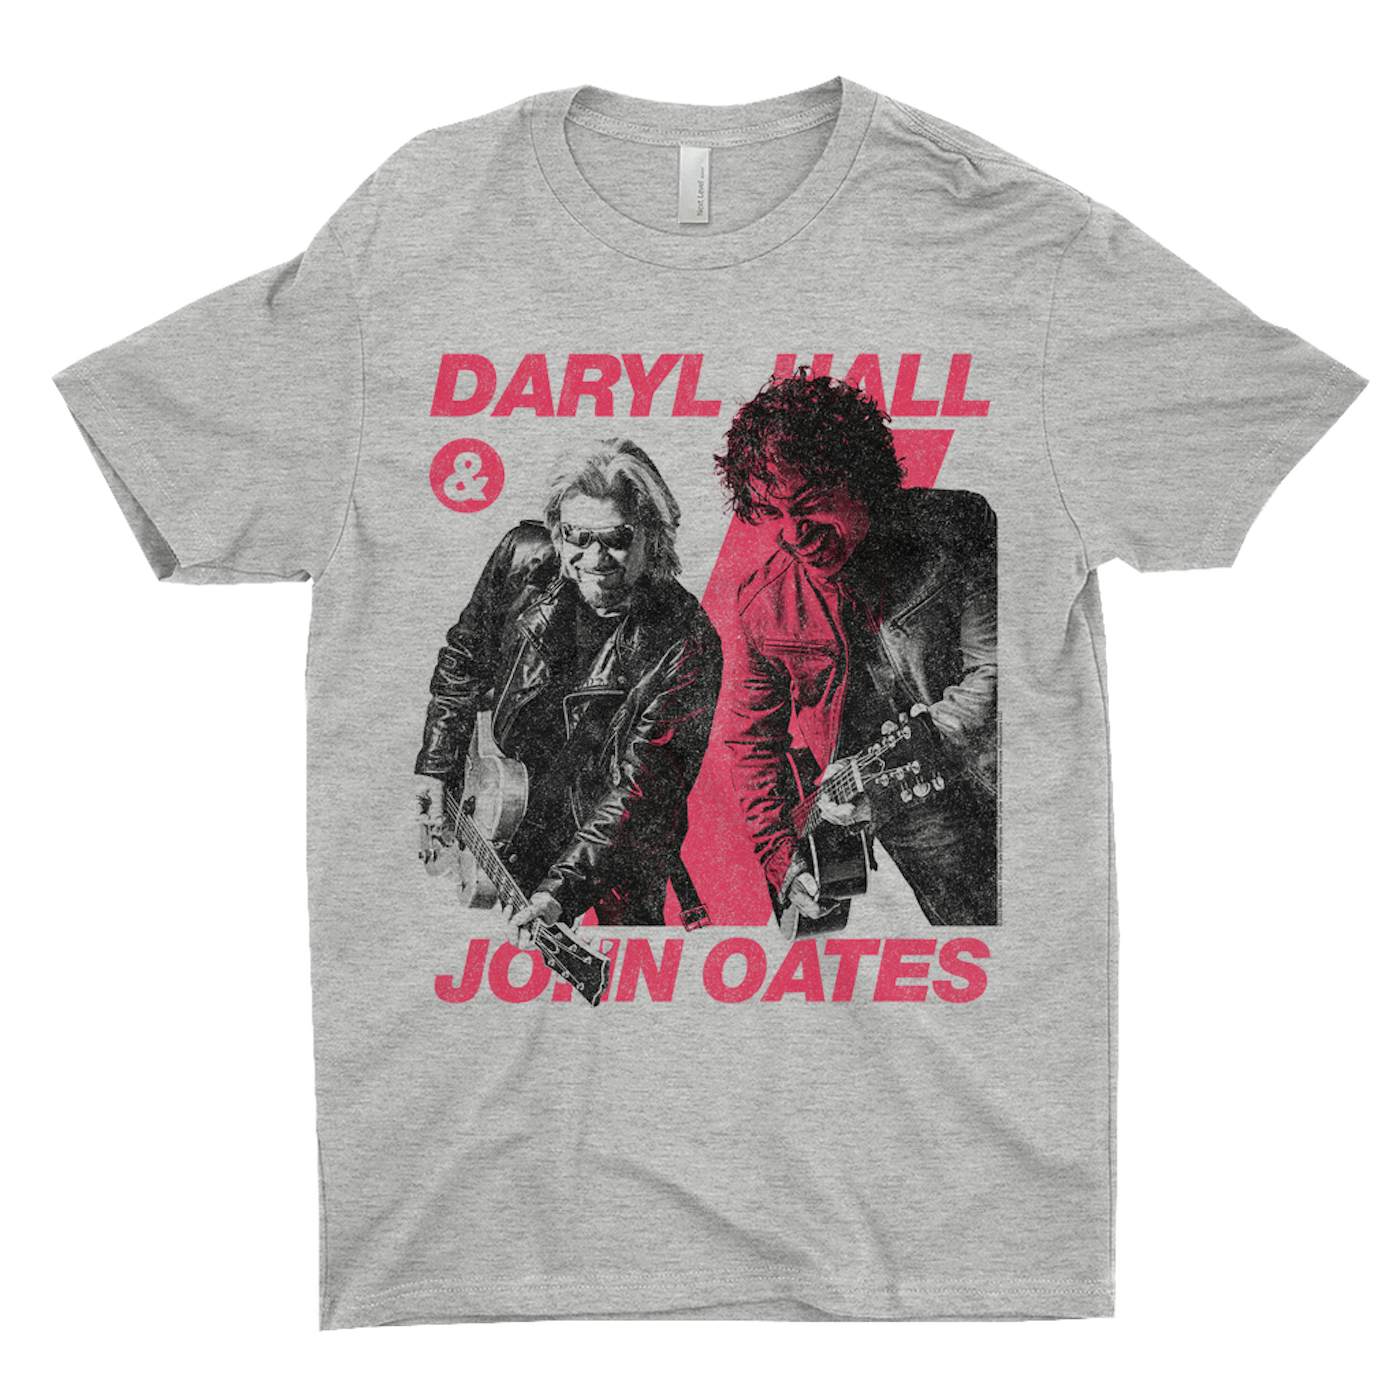 Daryl Hall & John Oates T-Shirt | Pink Line Image Hall & Oates Shirt